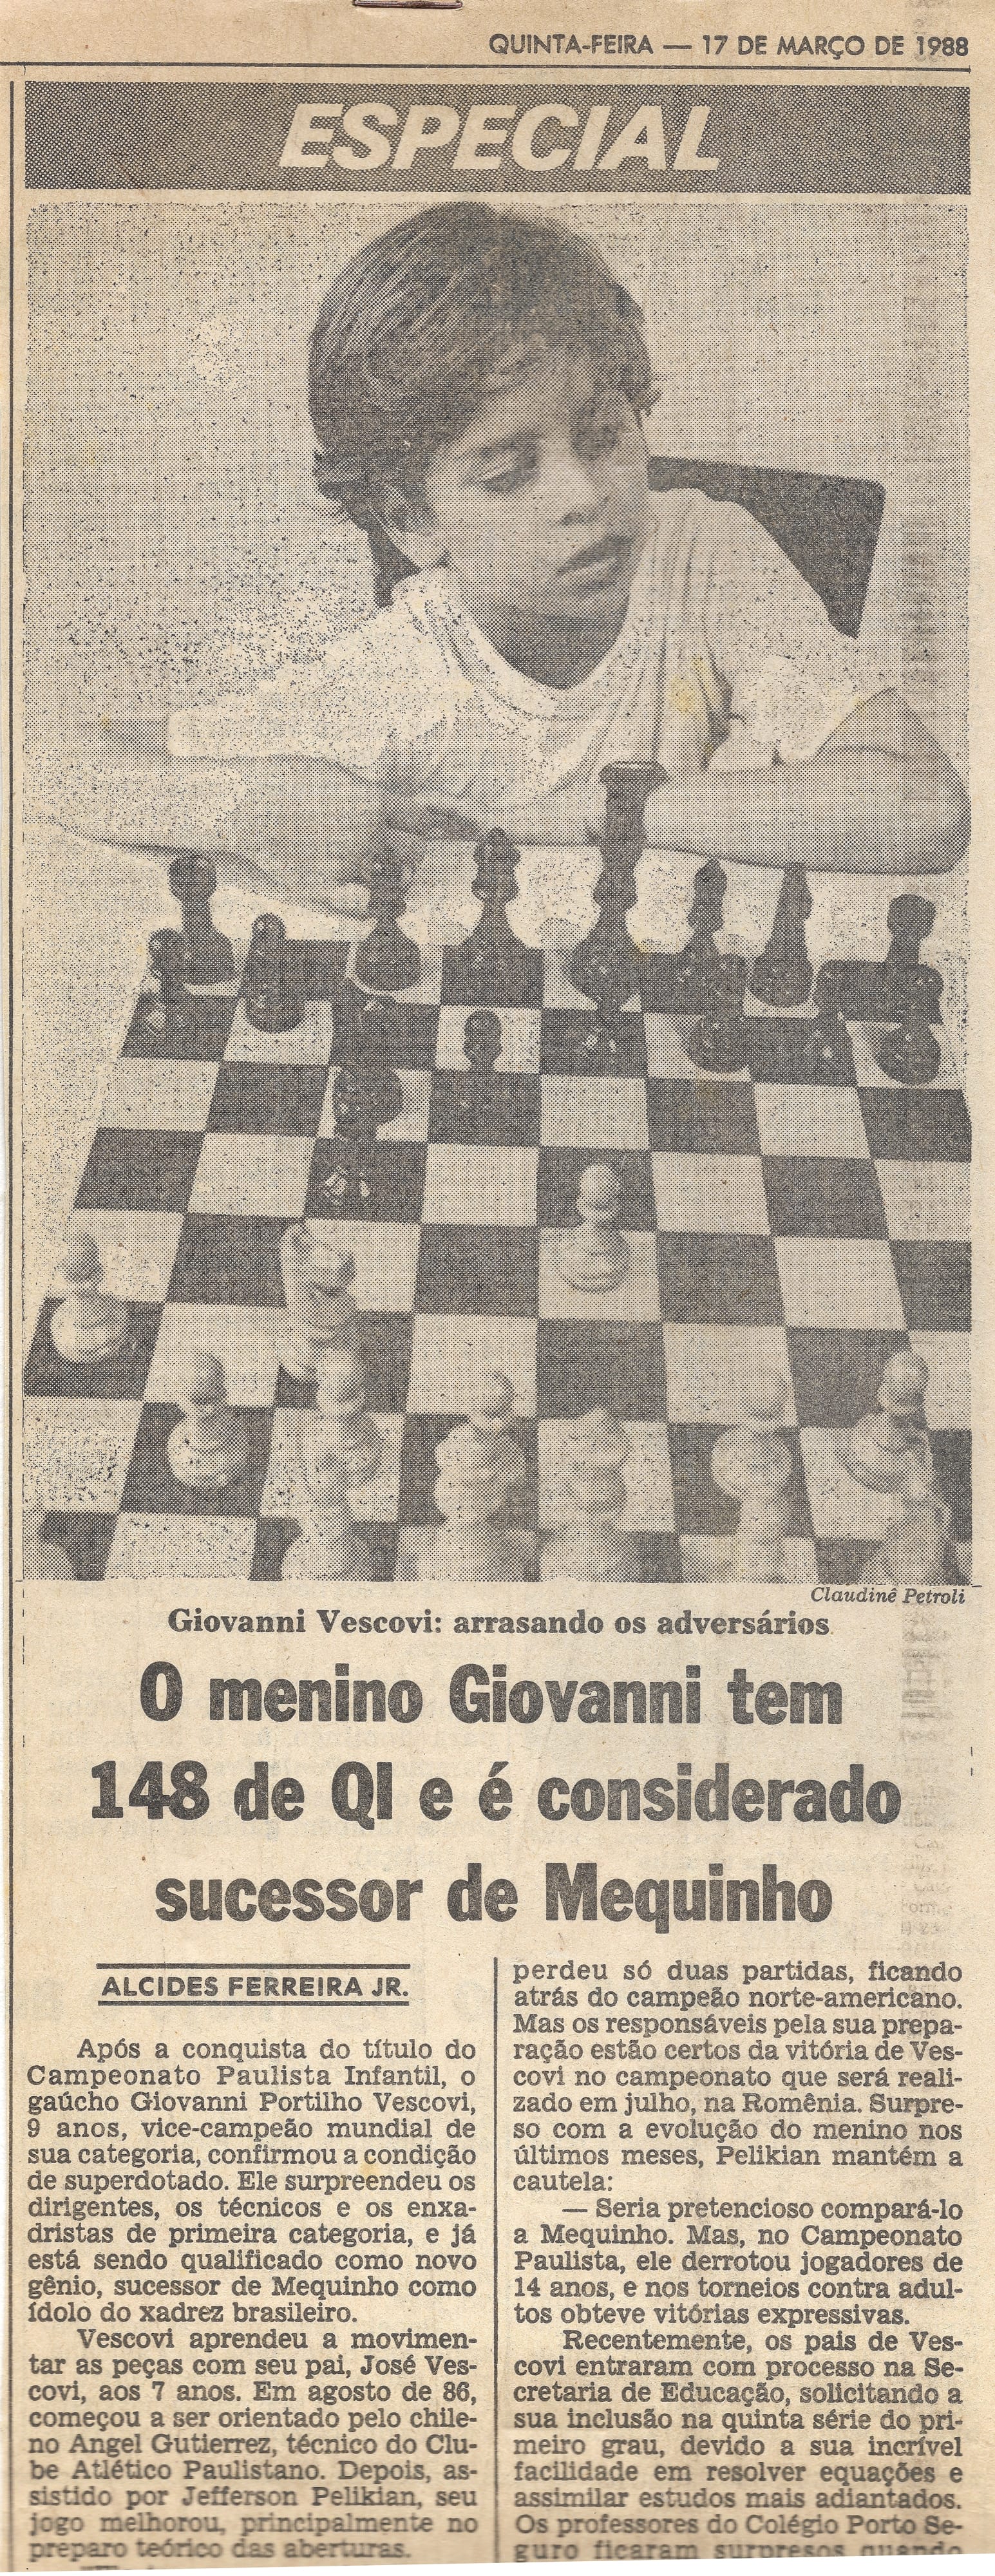 Giovanni Vescovi